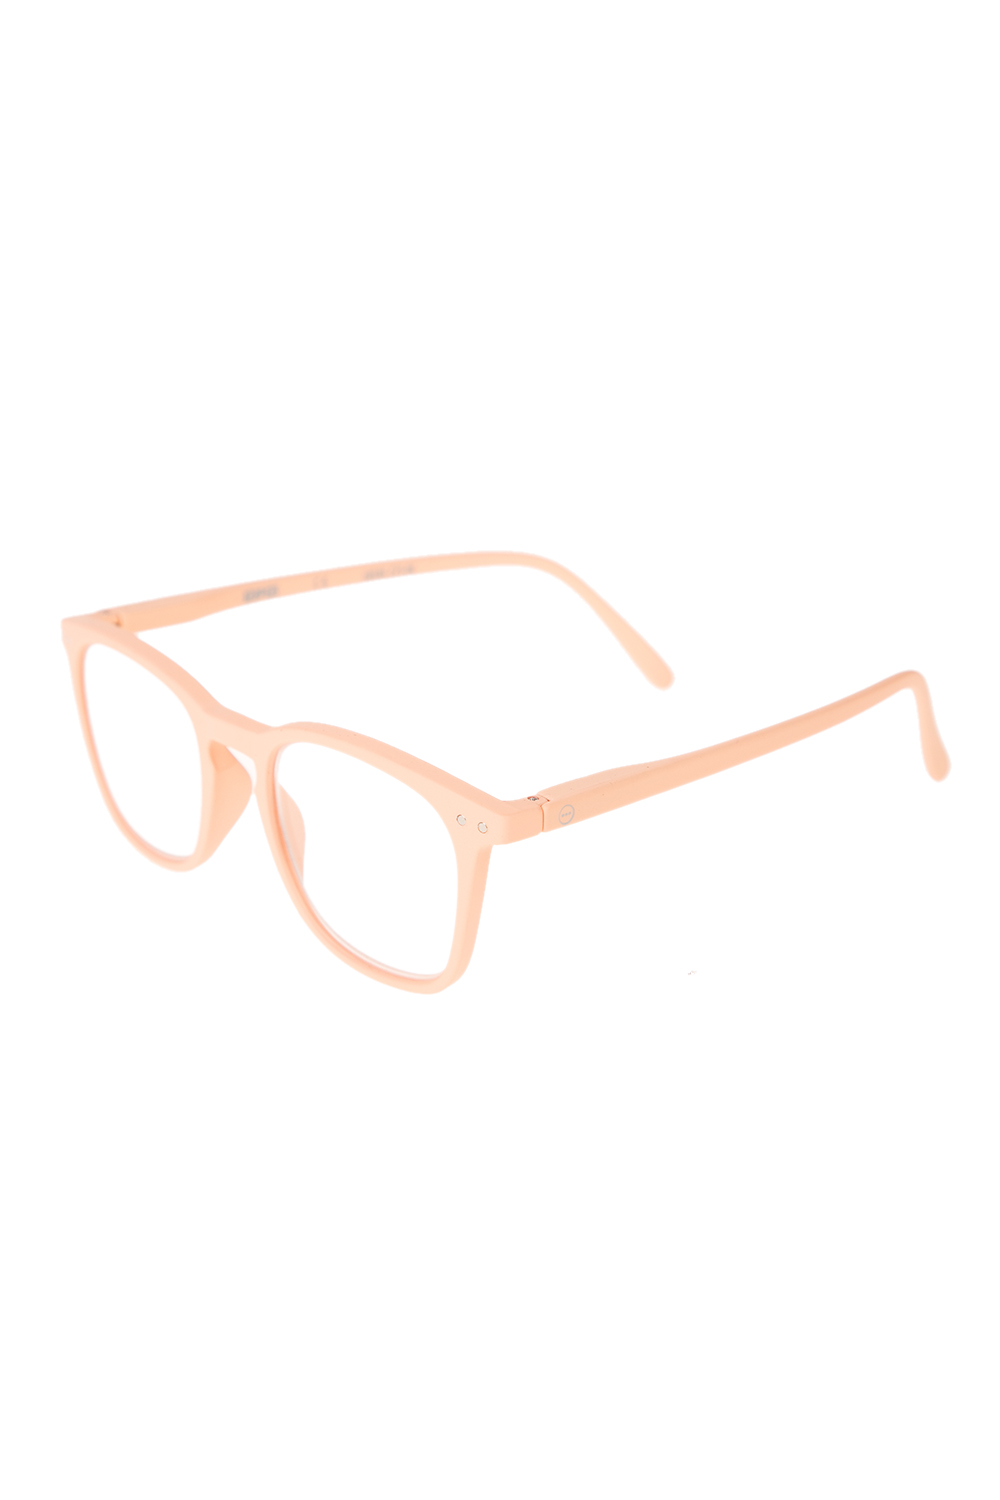 Γυναικεία/Αξεσουάρ/Γυαλιά/Οράσεως IZIPIZI - Unisex γυαλιά οράσεως IZIPIZI READING #E LIM/EDITION ροζ